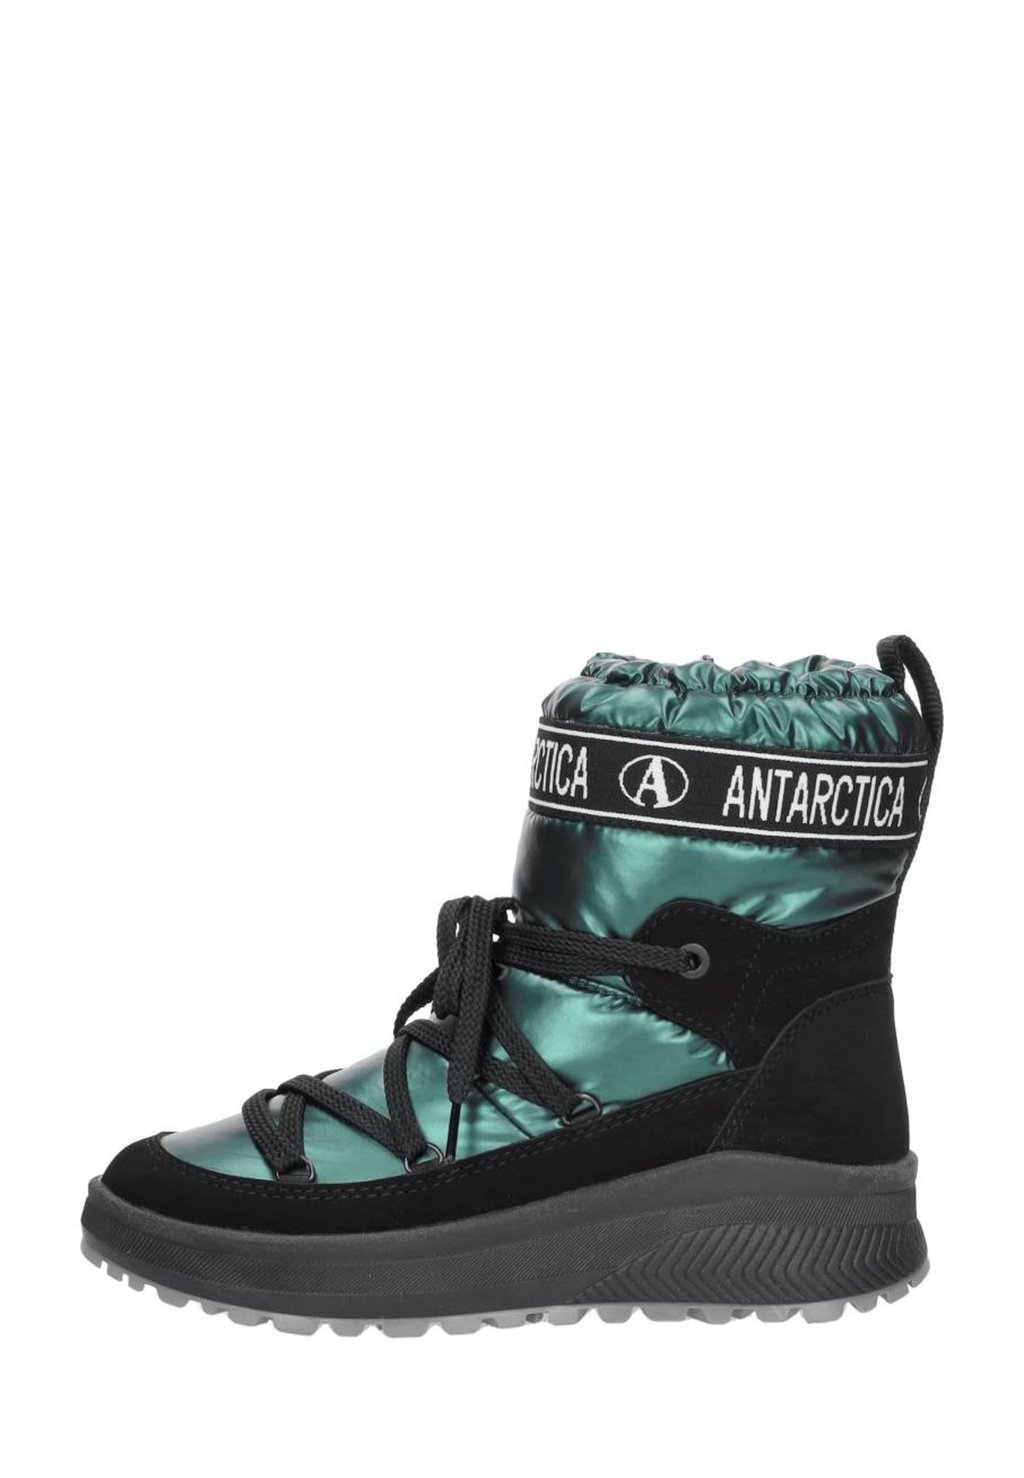 Зимние ботинки Antarctica Boots, цвет groen